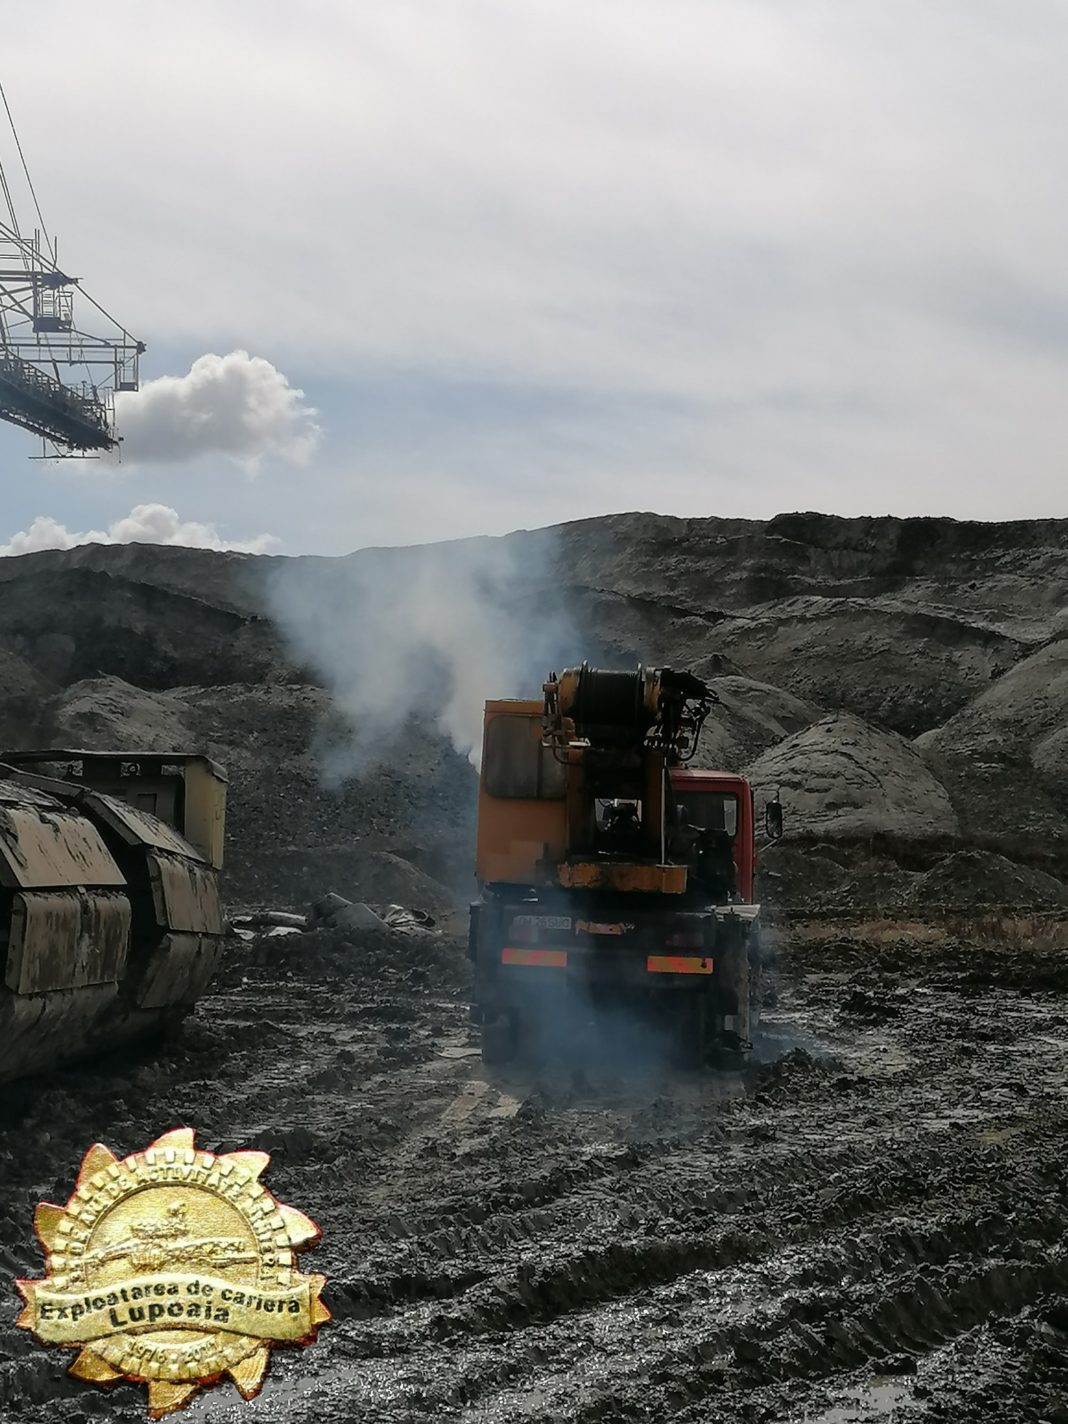 Minerii de la o carieră de cărbune a Complexului Energetic Oltenia au intrat în grevă de avertisment